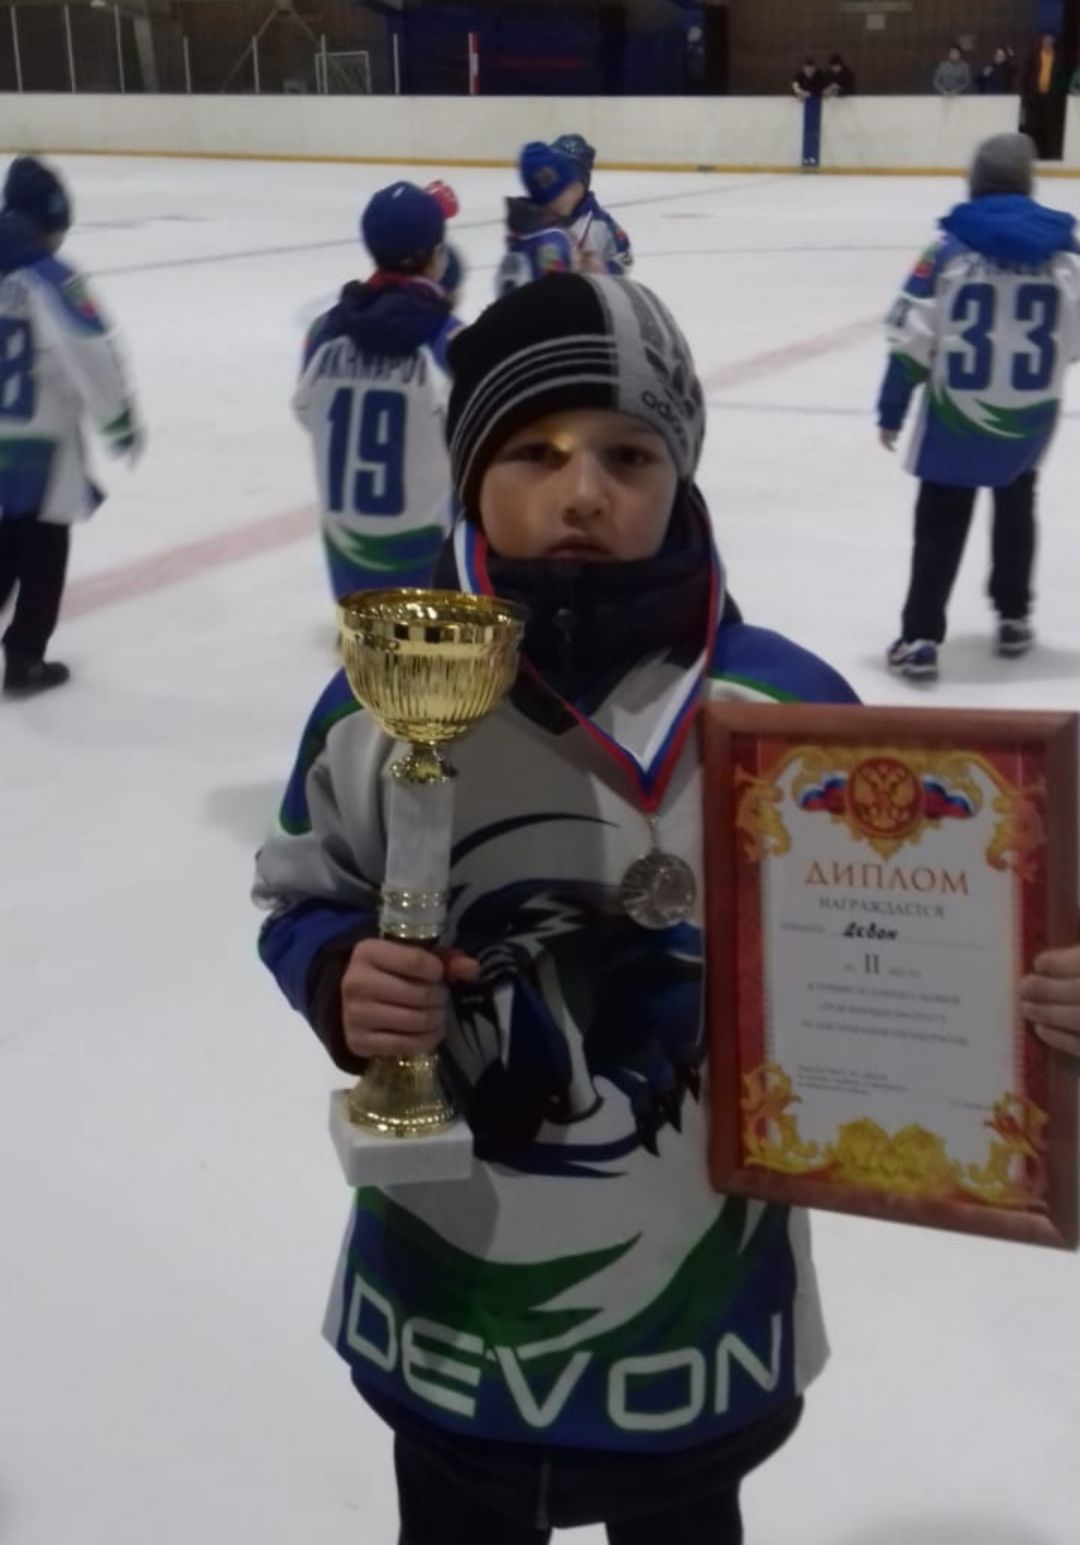 Юный хоккеист Бавлов: «Буду очень стараться, чтобы в будущем стать известным хоккеистом»